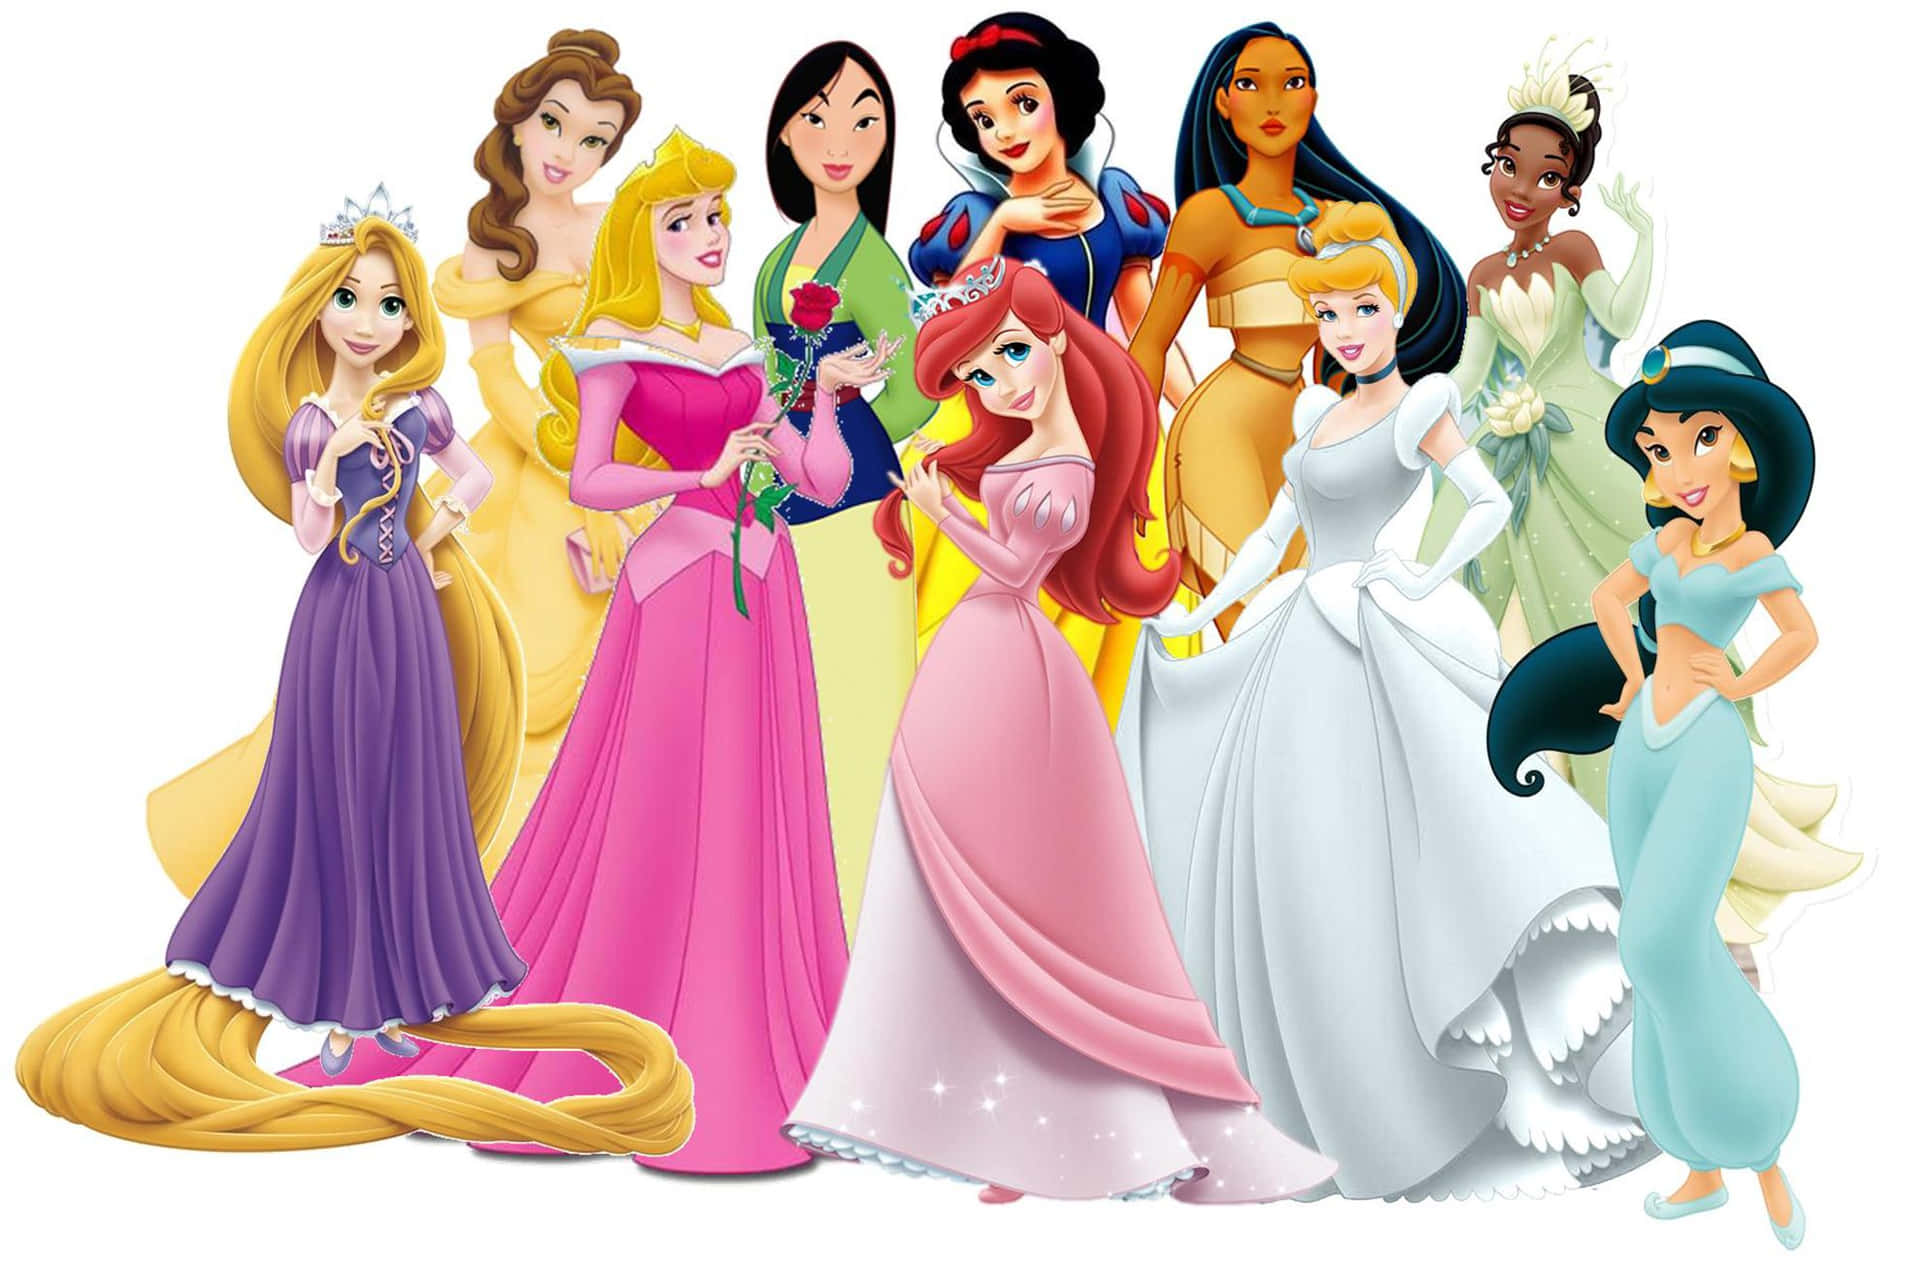 Imagemdos Trajes De Princesas Da Disney Para A Família Como Papel De Parede Do Computador Ou Celular.